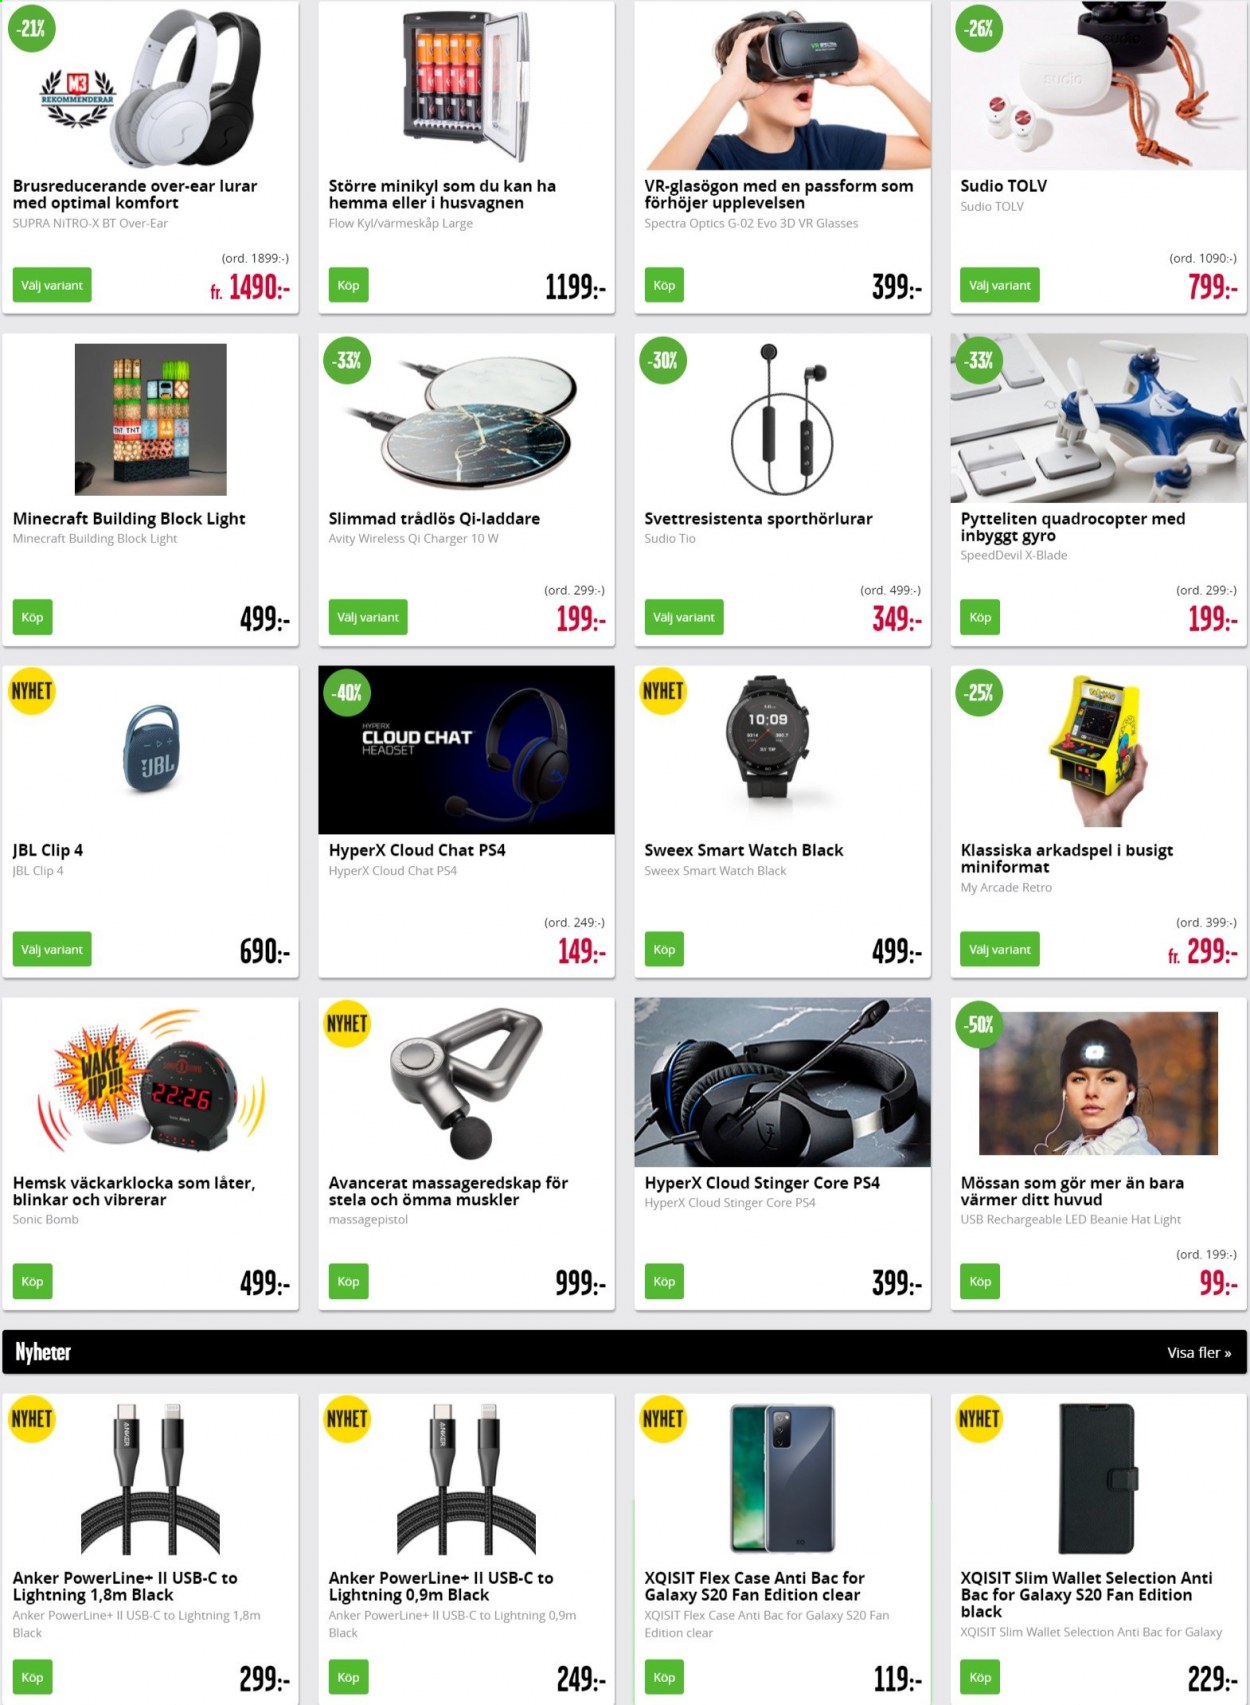 thumbnail - Teknikmagasinet reklamblad - varor från reklamblad - quadrocopter, smartwatch, JBL, qi-laddare, PlayStation, PS4. Sida 1.